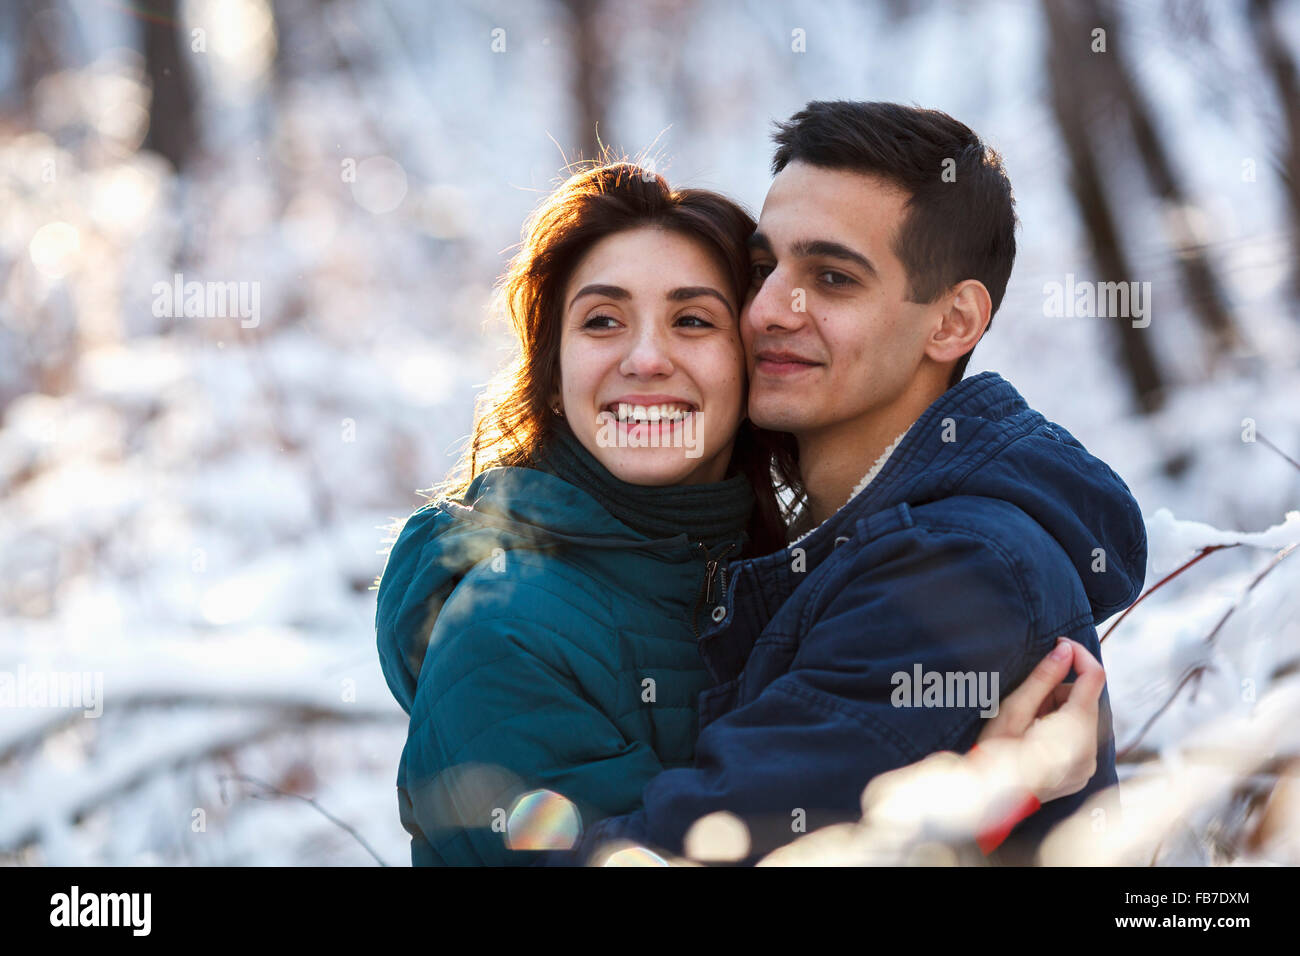 Loving couple pendant l'hiver Banque D'Images